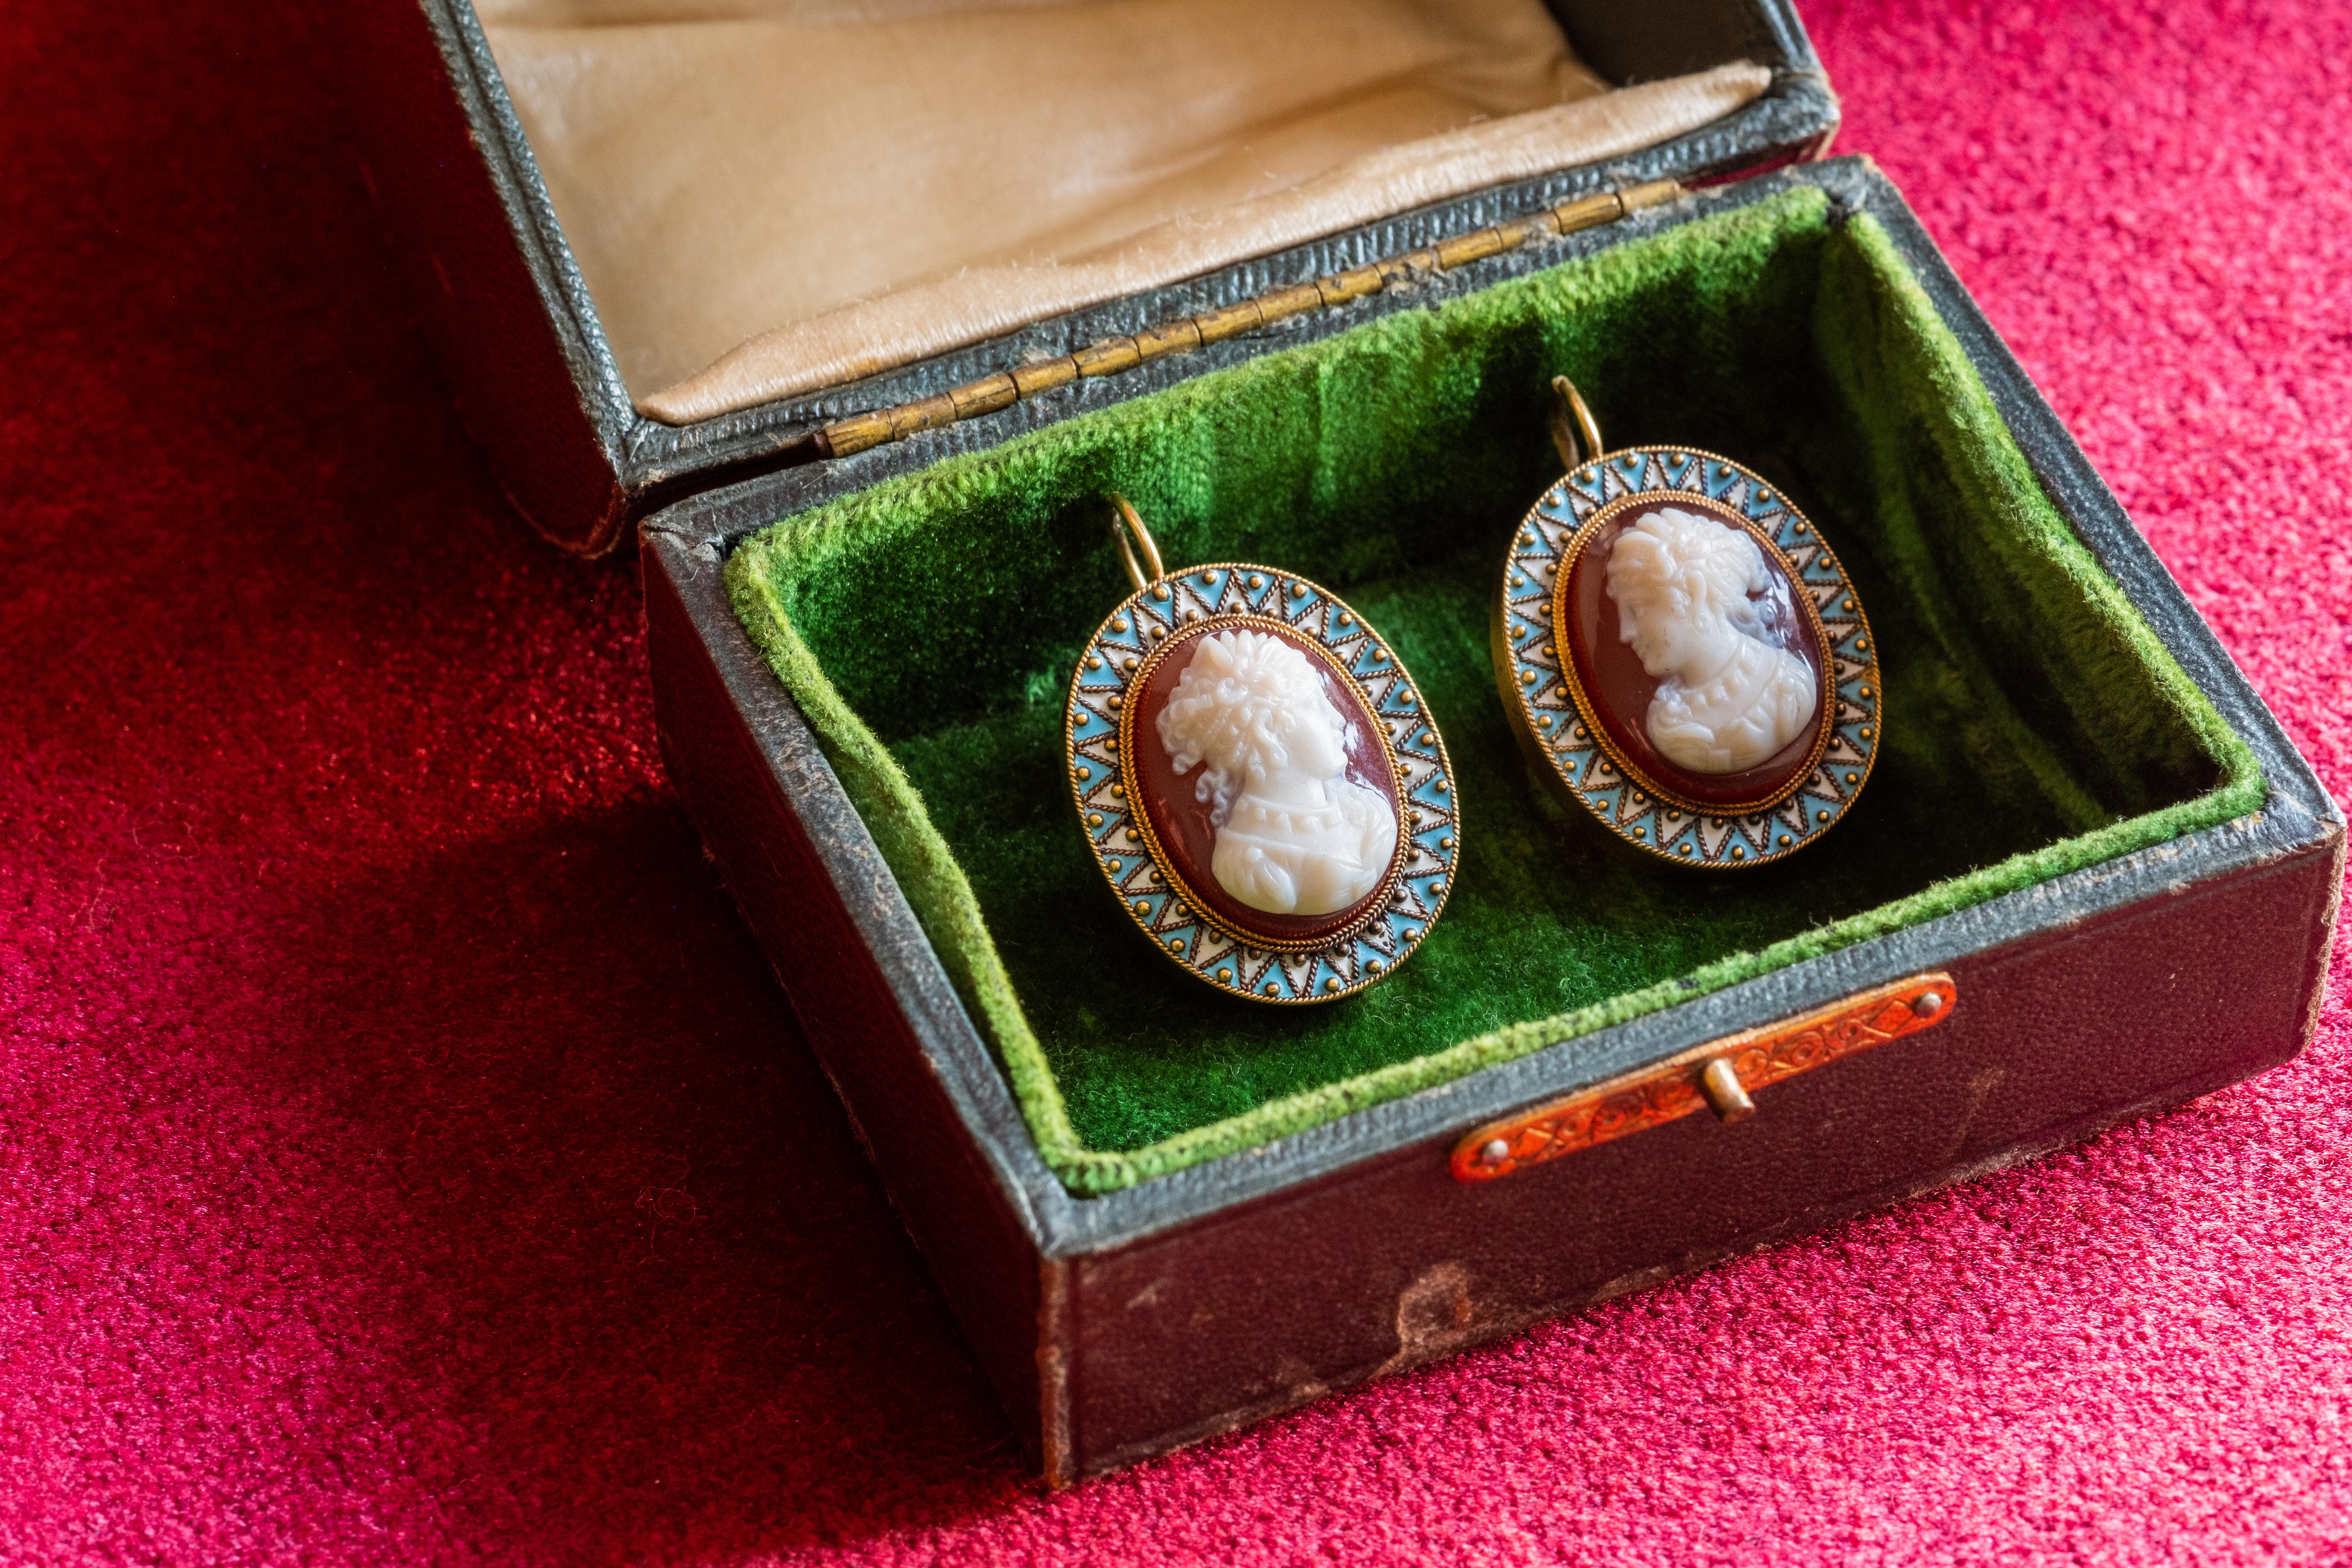 Exquisite mittelviktorianische Kameen- und Emaille-Ohrringe, um 1850. 
Wunderschön gestaltete und unglaubliche handgeschnitzte individuelle Kameen von zwei Göttinnen sind mit einem wunderbar hohen Relief besetzt. In 9-karätigem Gold gefasst und mit